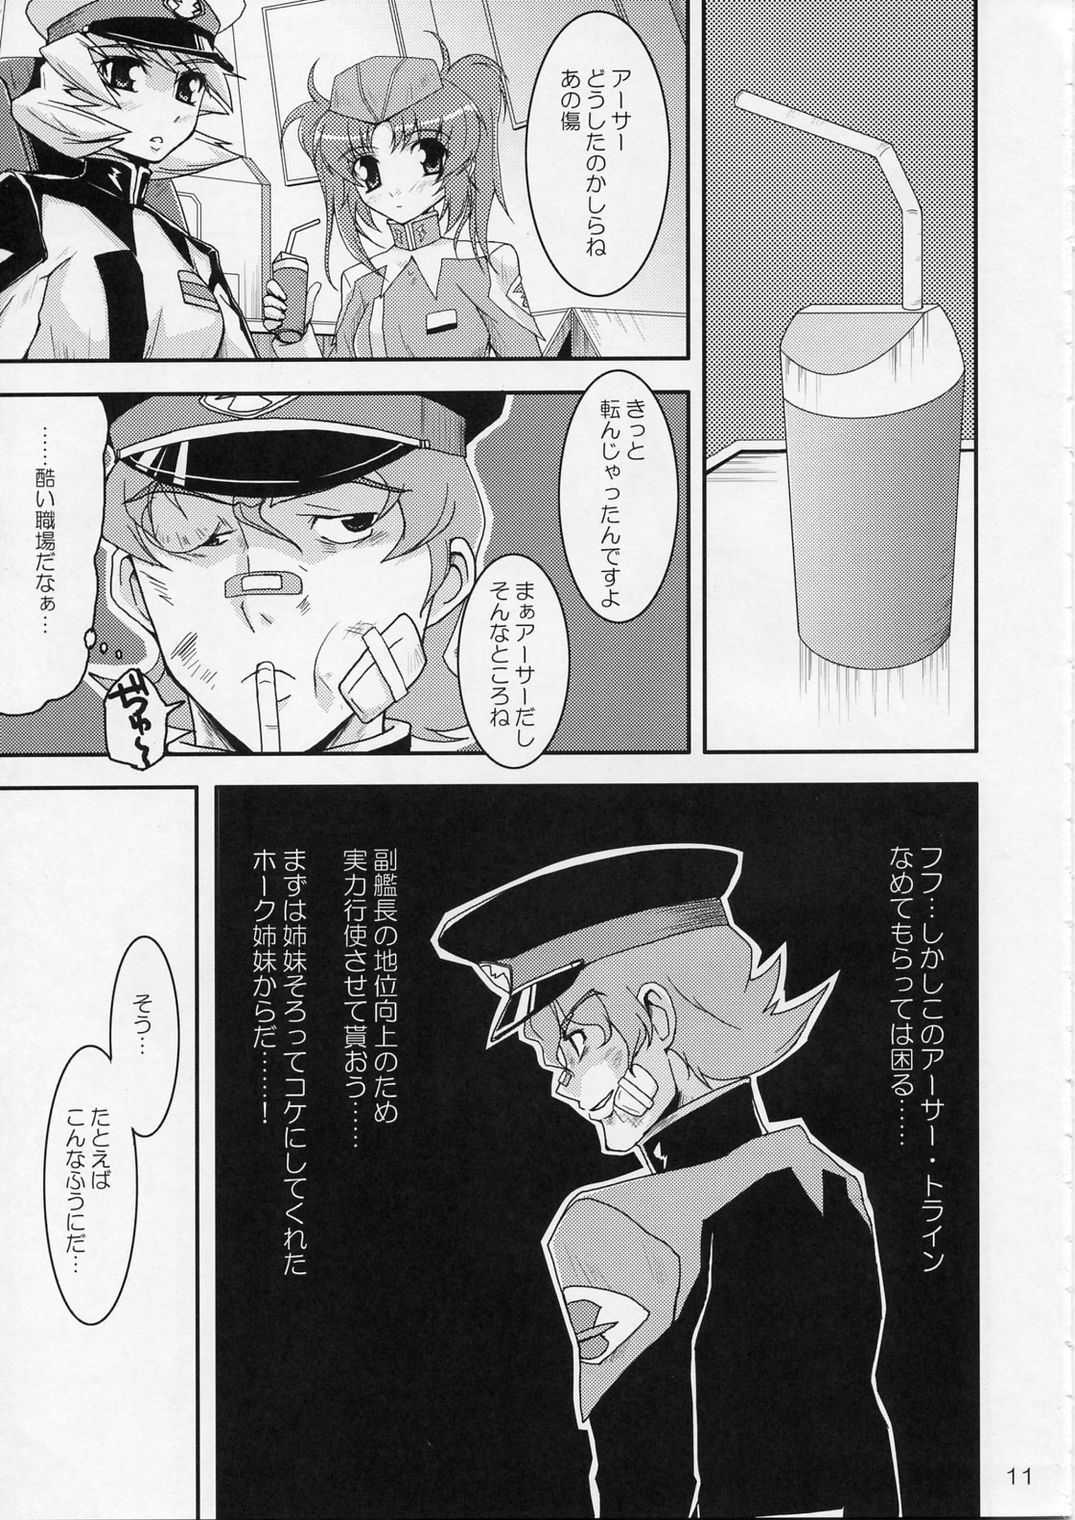 [Mutekichaya] Sonna Shimai Shuusei Shiteyaru! [Gundam Seed Destiny] 